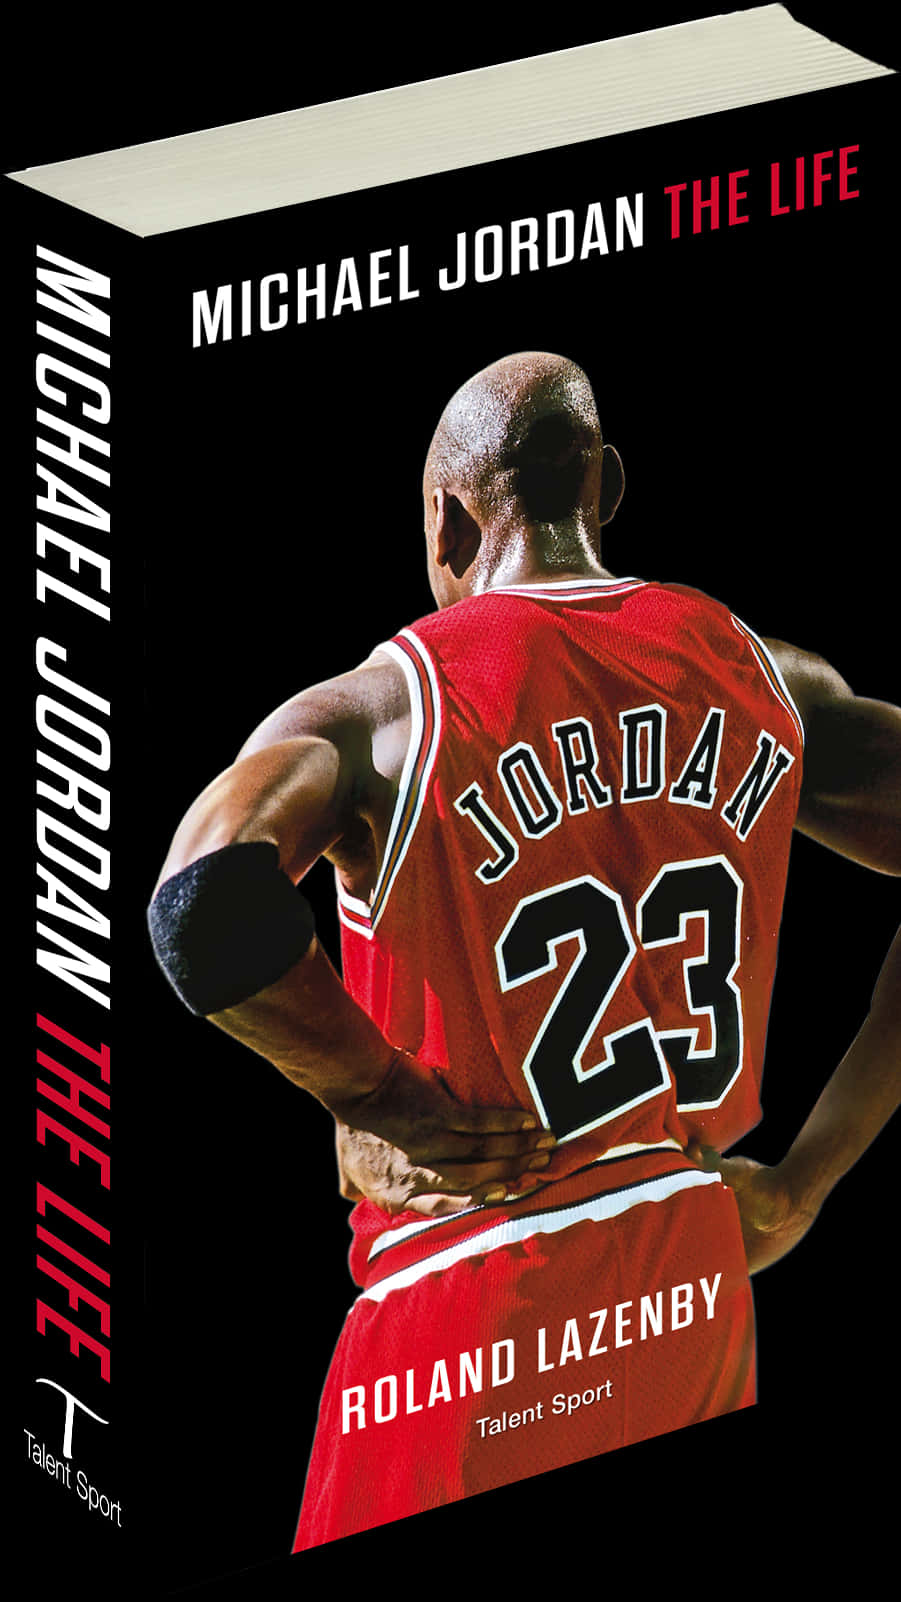 Michael Jordan The Life Book Cover PNG image